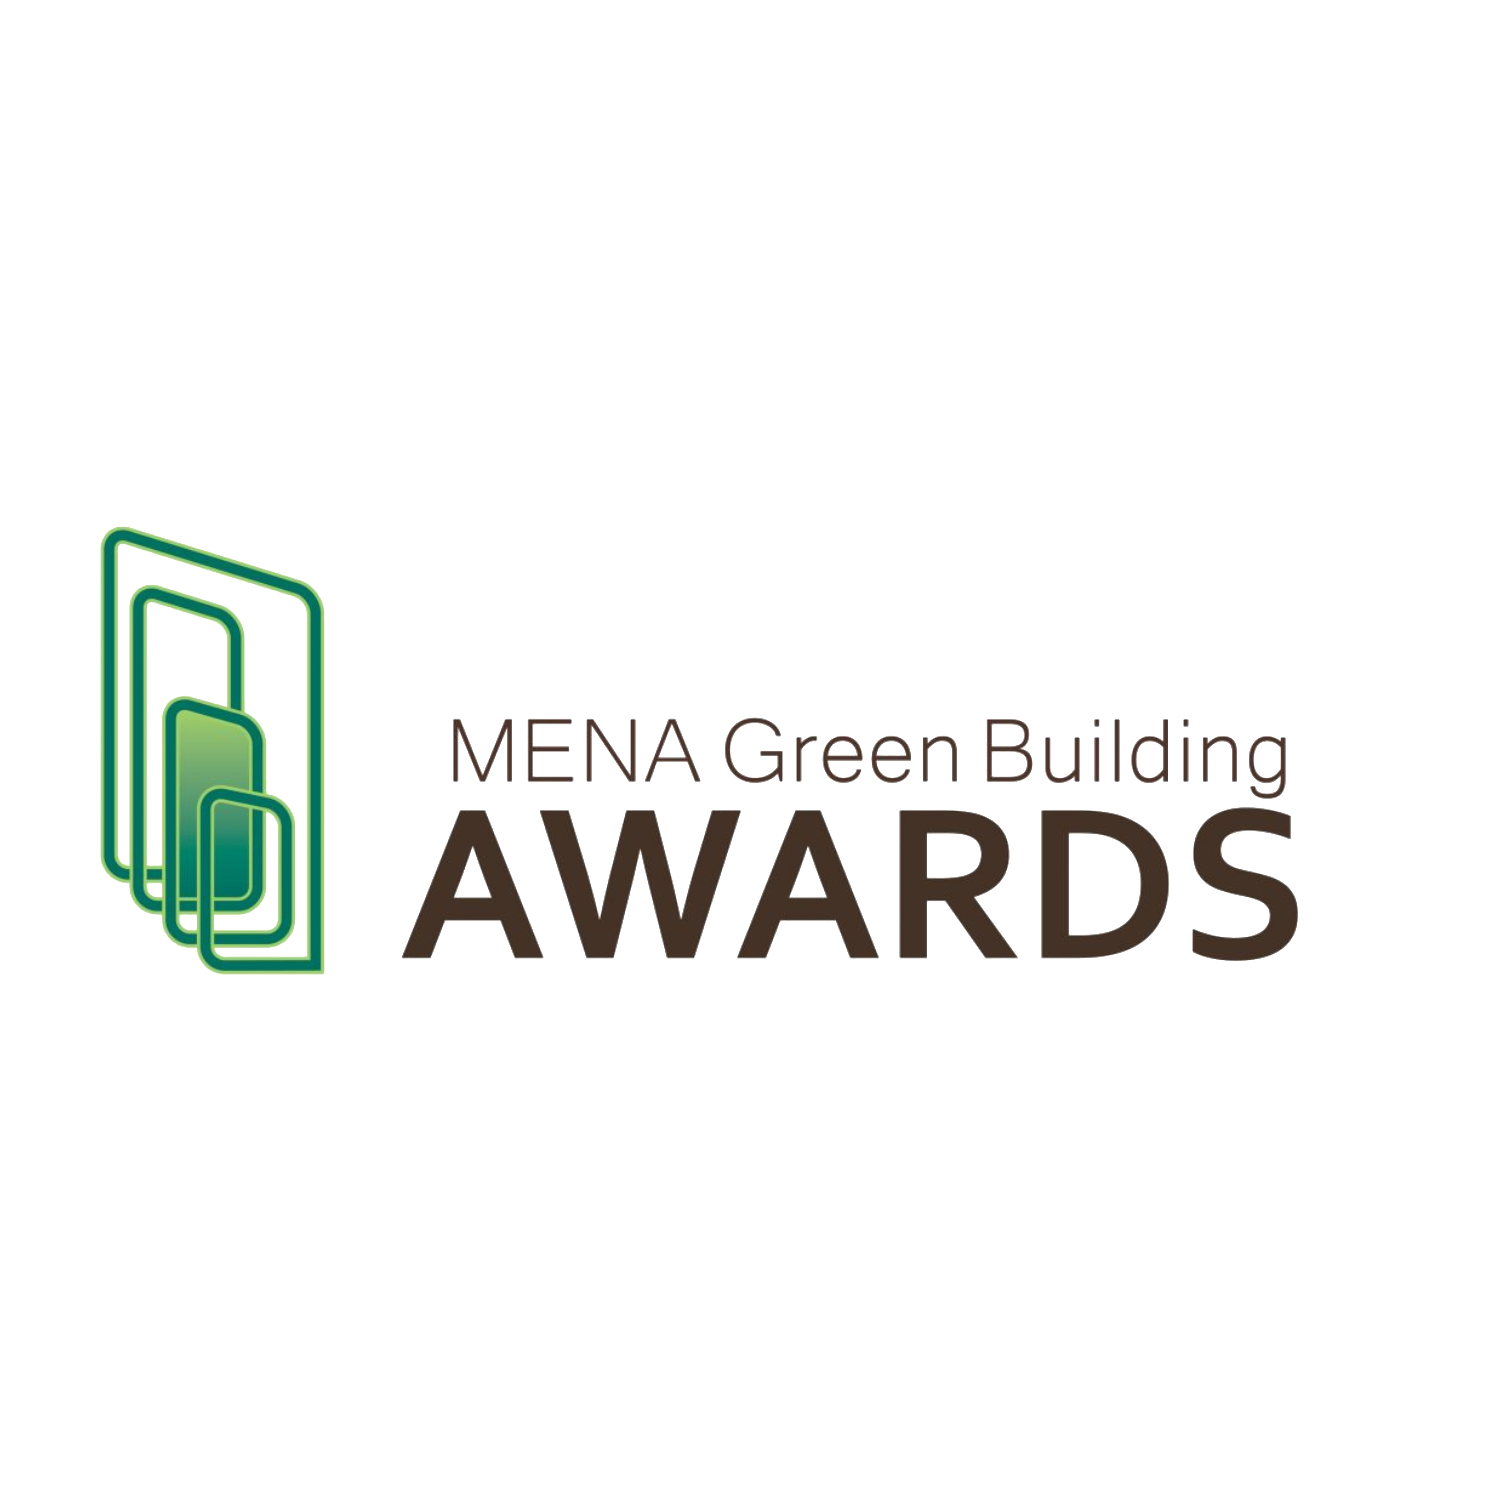 MENA GREEN BUILDING